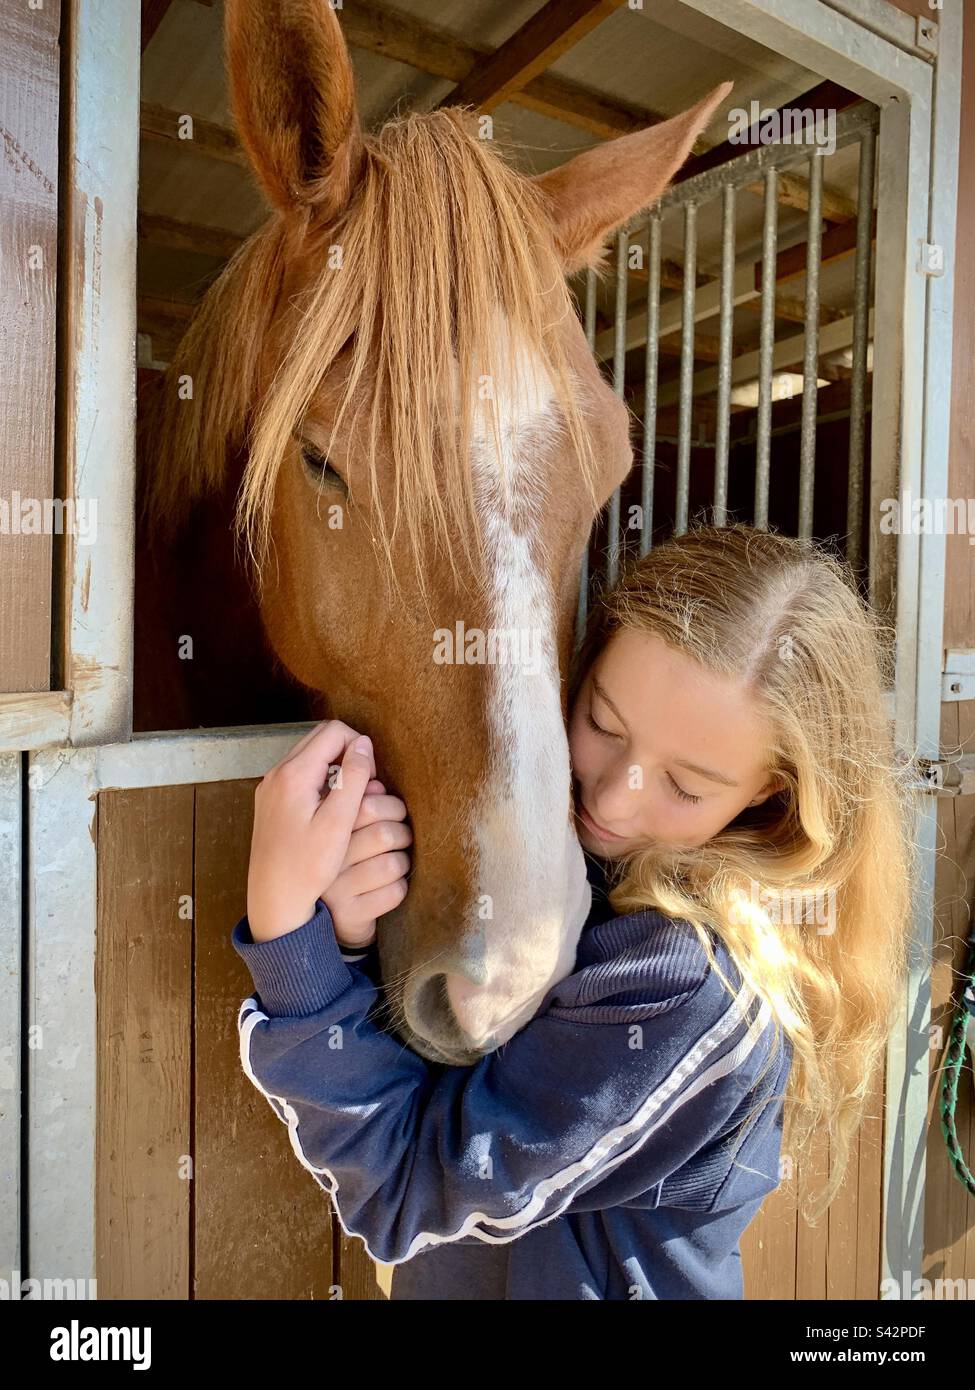 Giovane ragazza adolescente abbraccia un bel cavallo amante degli animali chiusi gli occhi Foto Stock